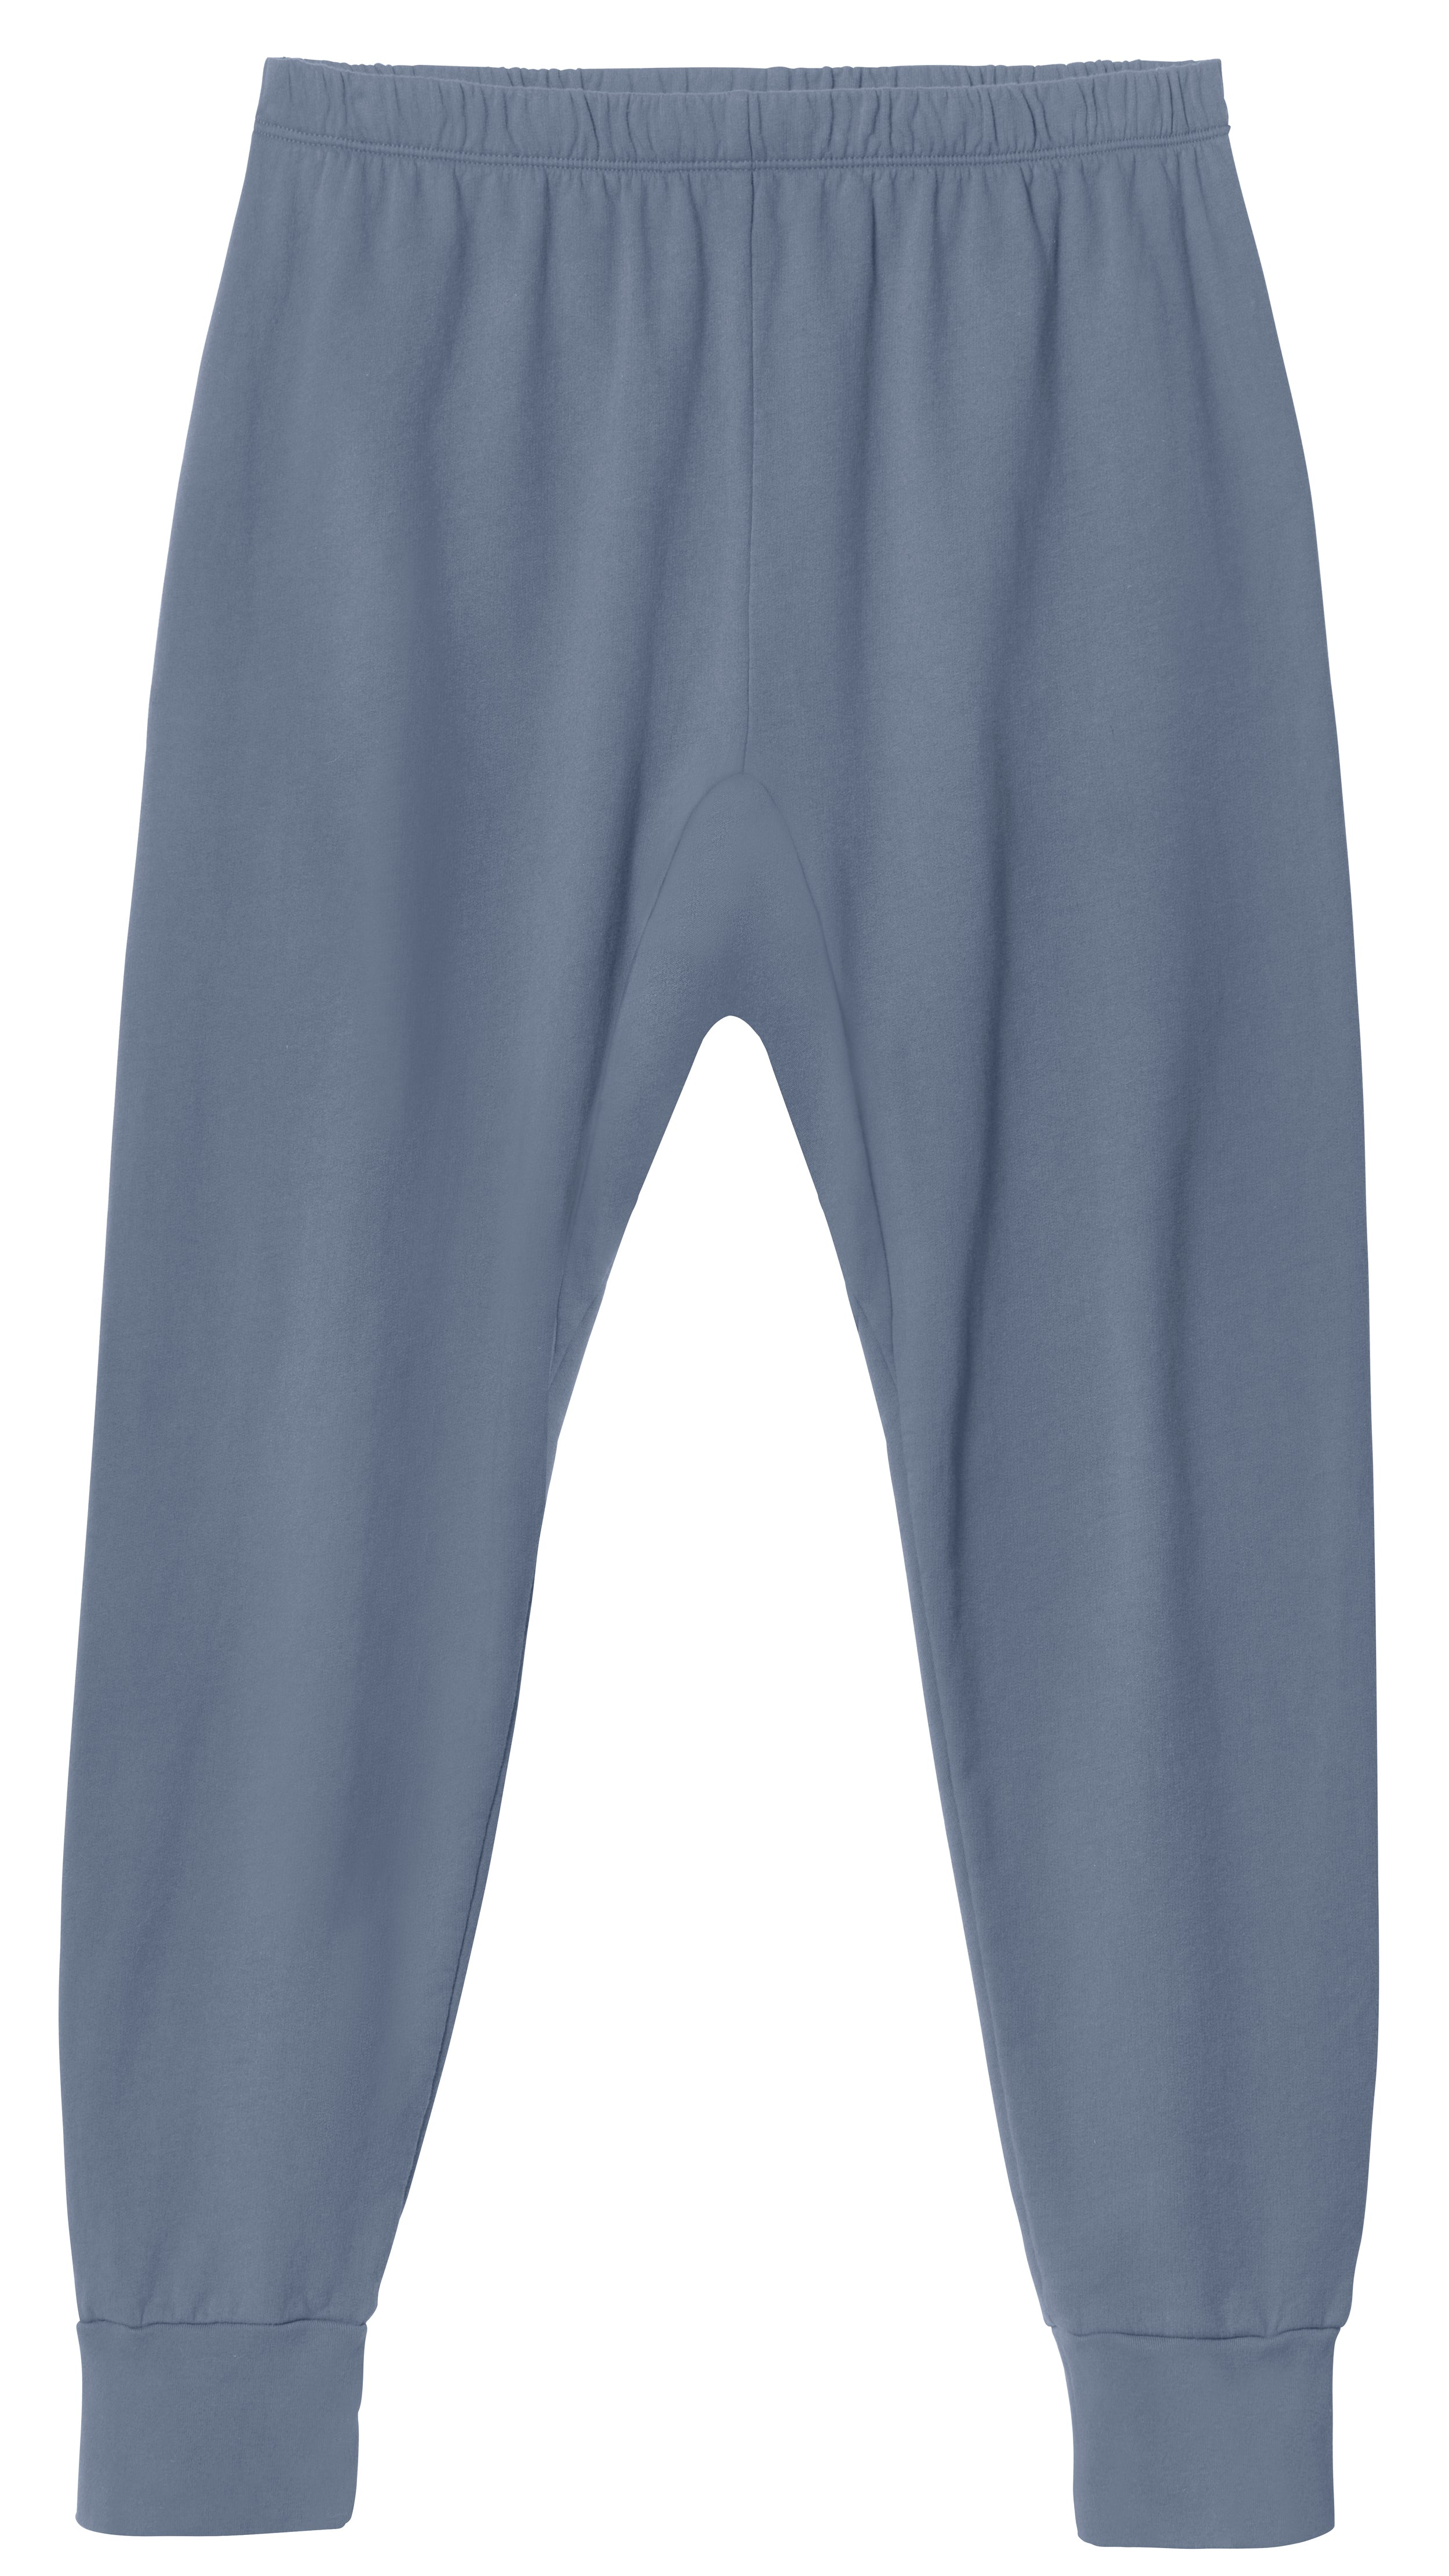 New Ladies Sweatpants Comfort Cotton Long Pants Jogger Trousers